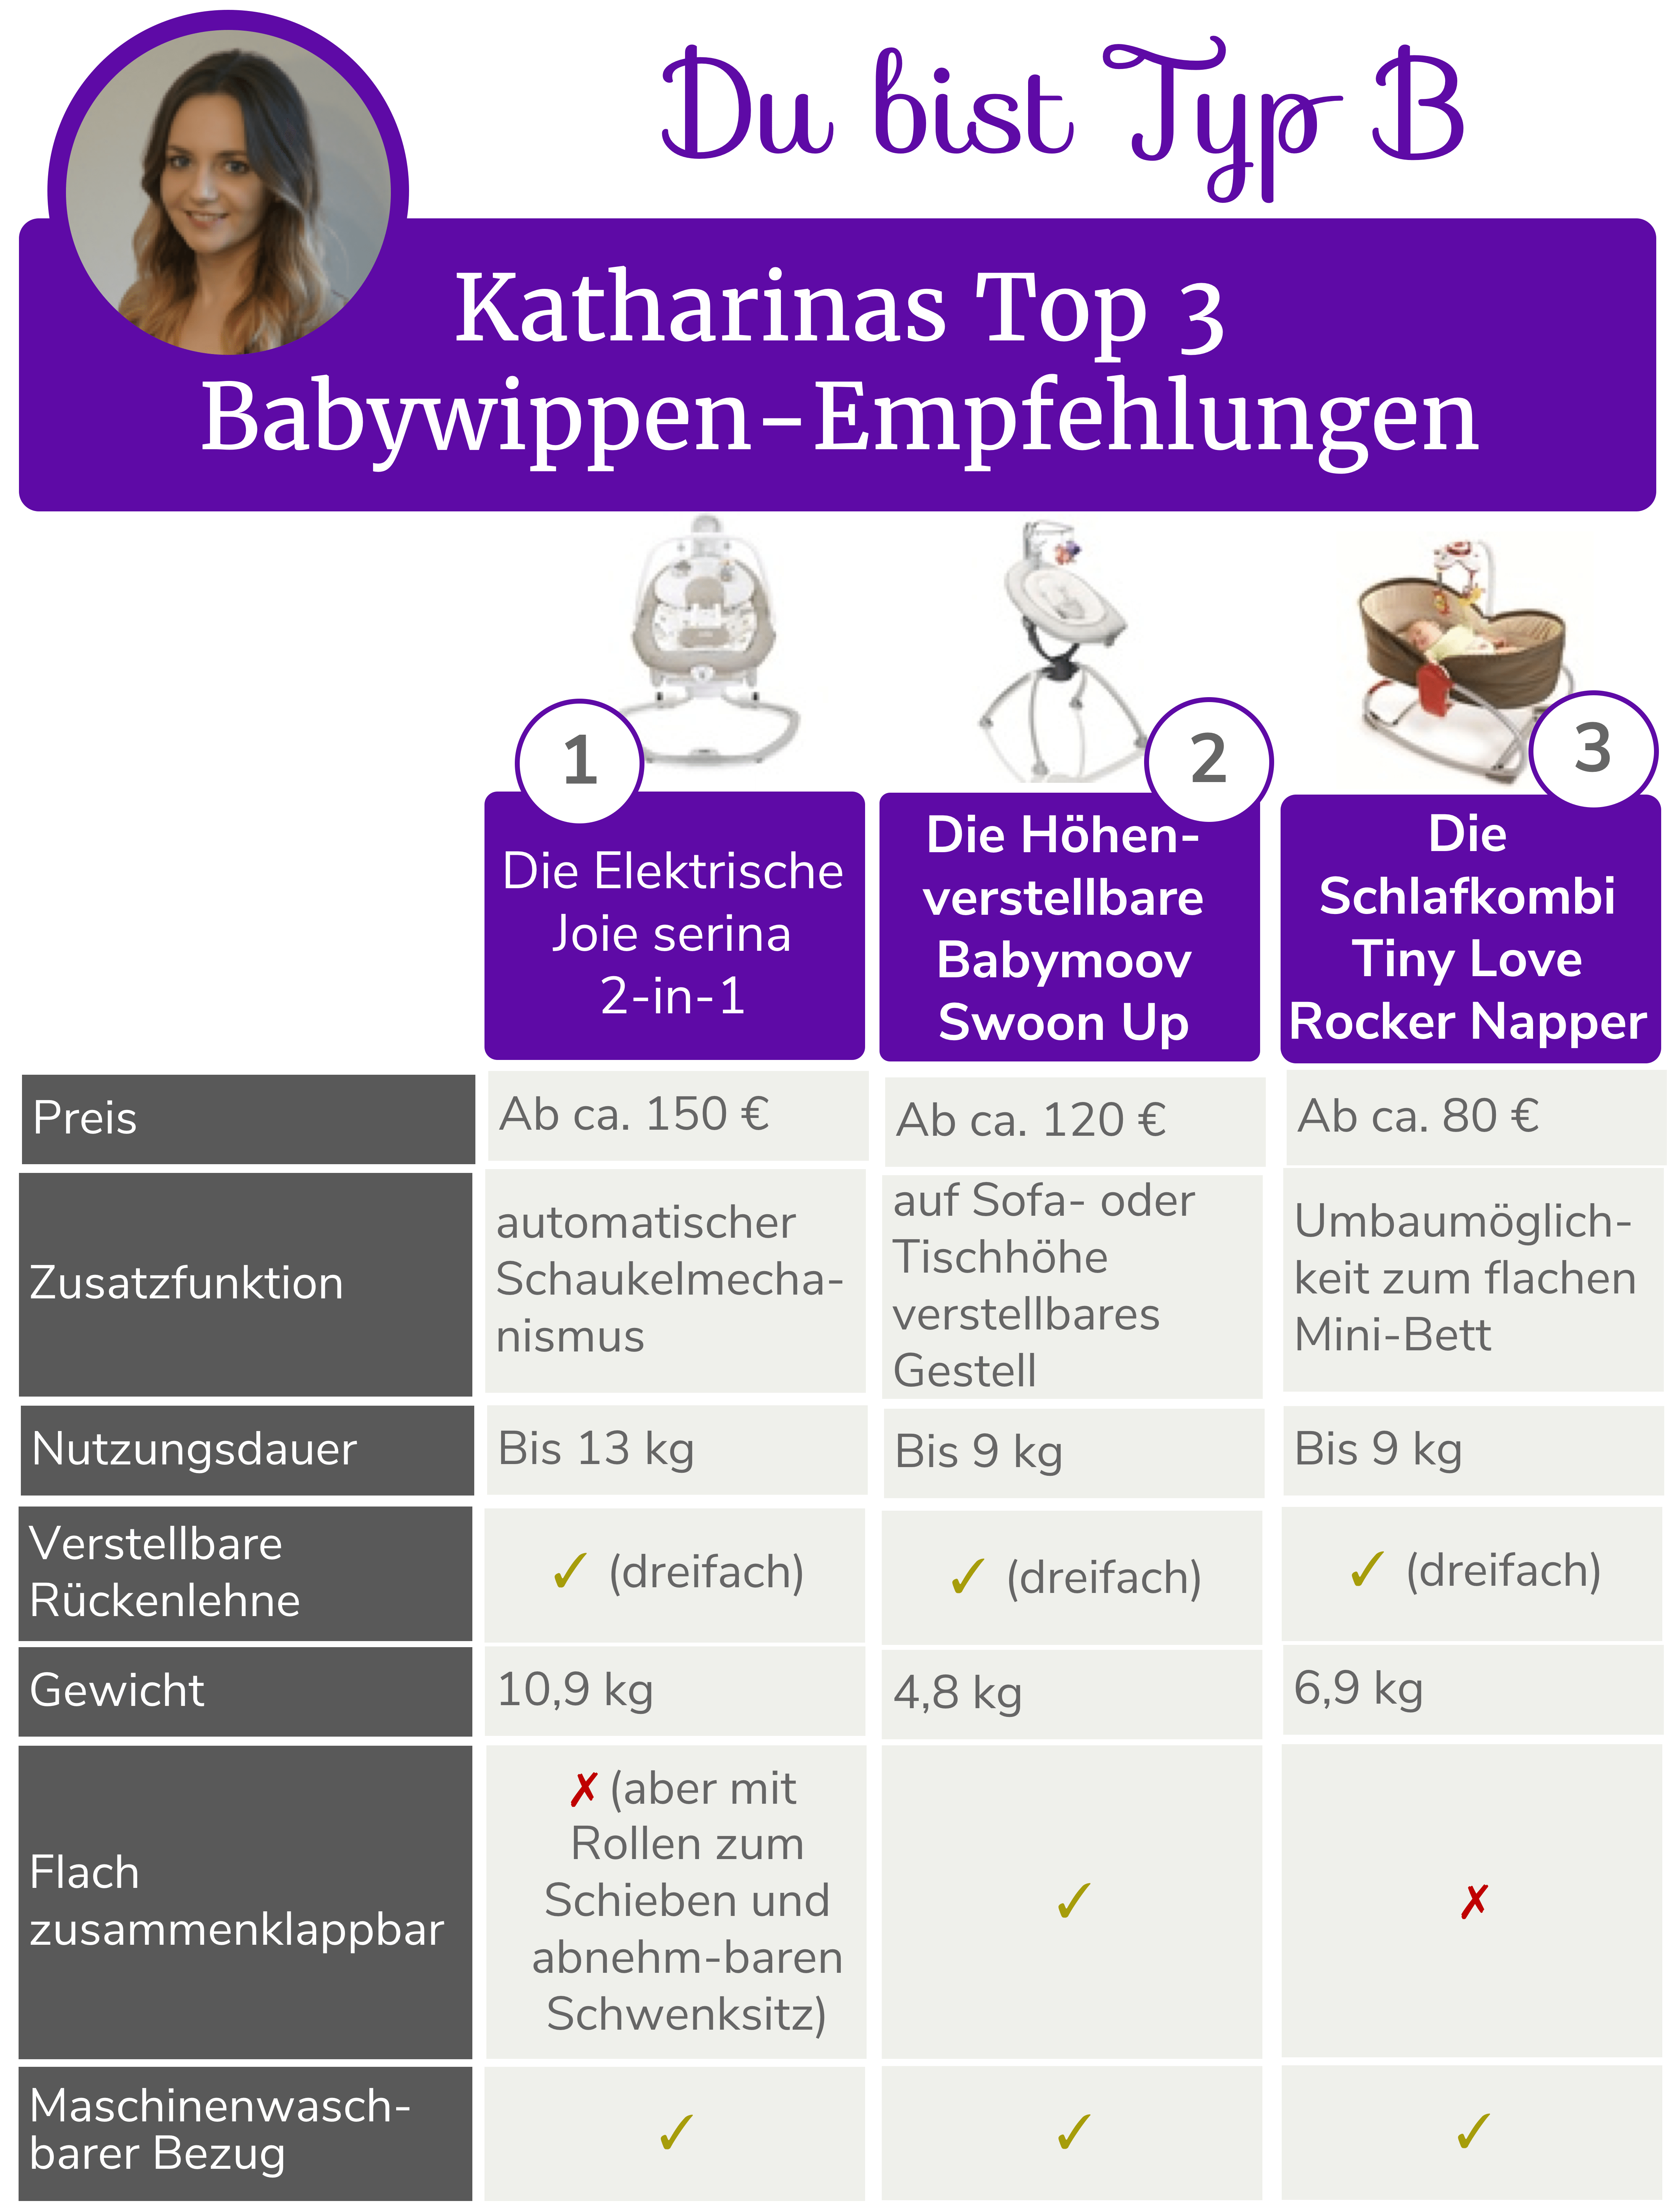 Babywippen - die Top 6 Empfehlungen